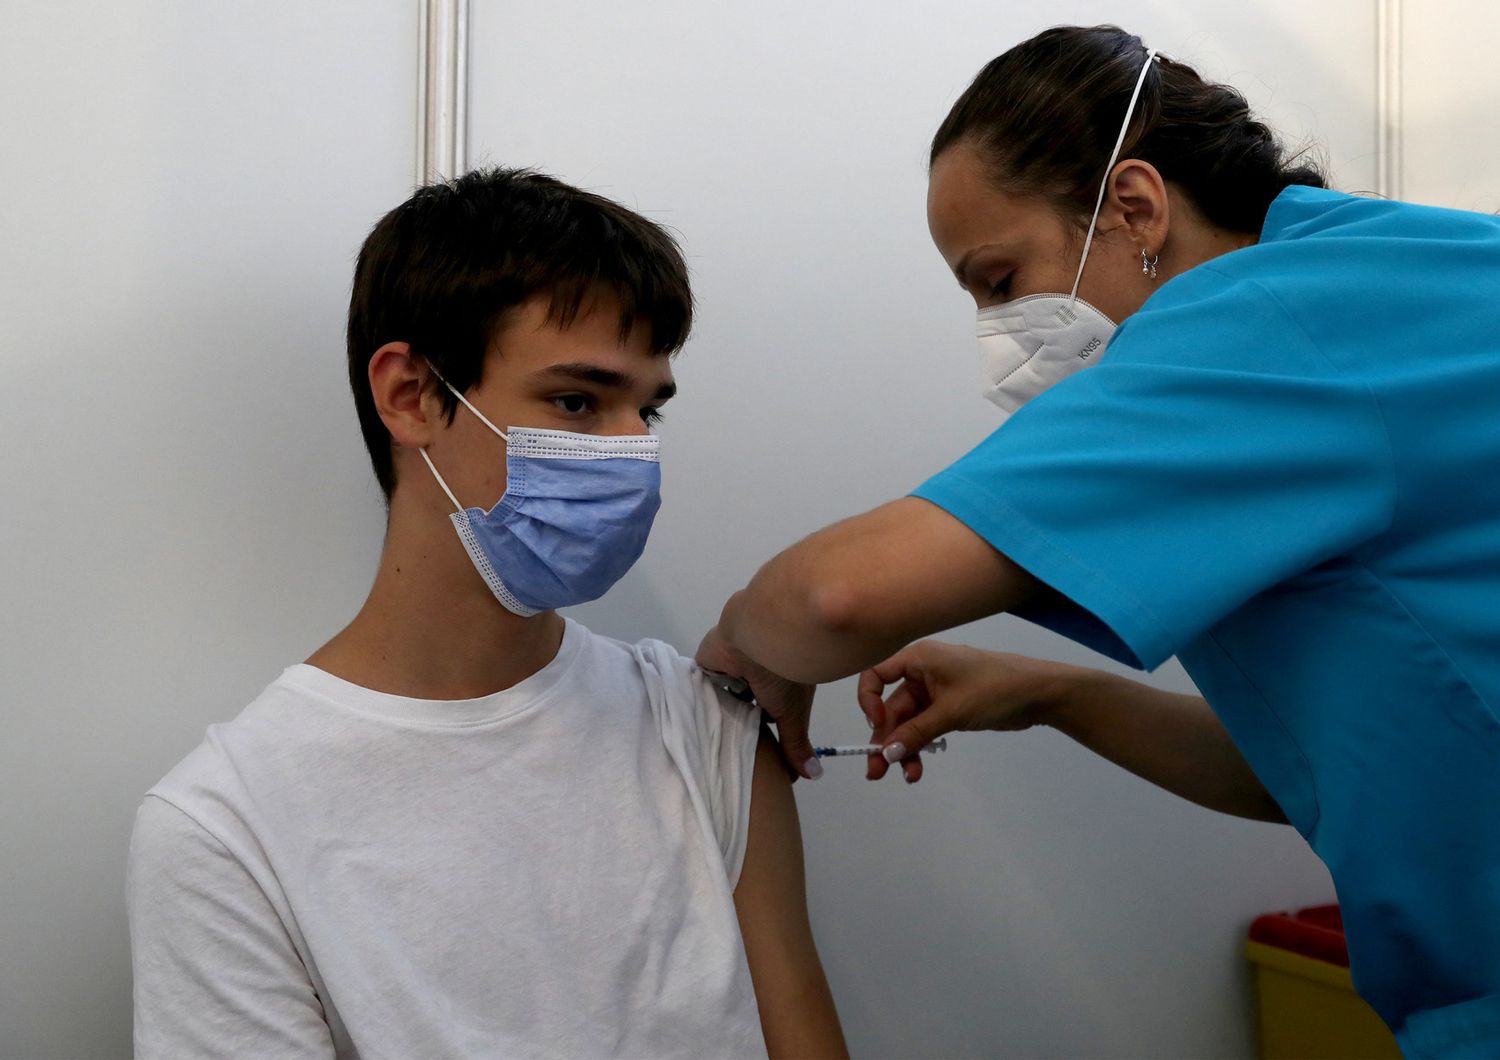 Adolescente riceve vaccino contro il Covid